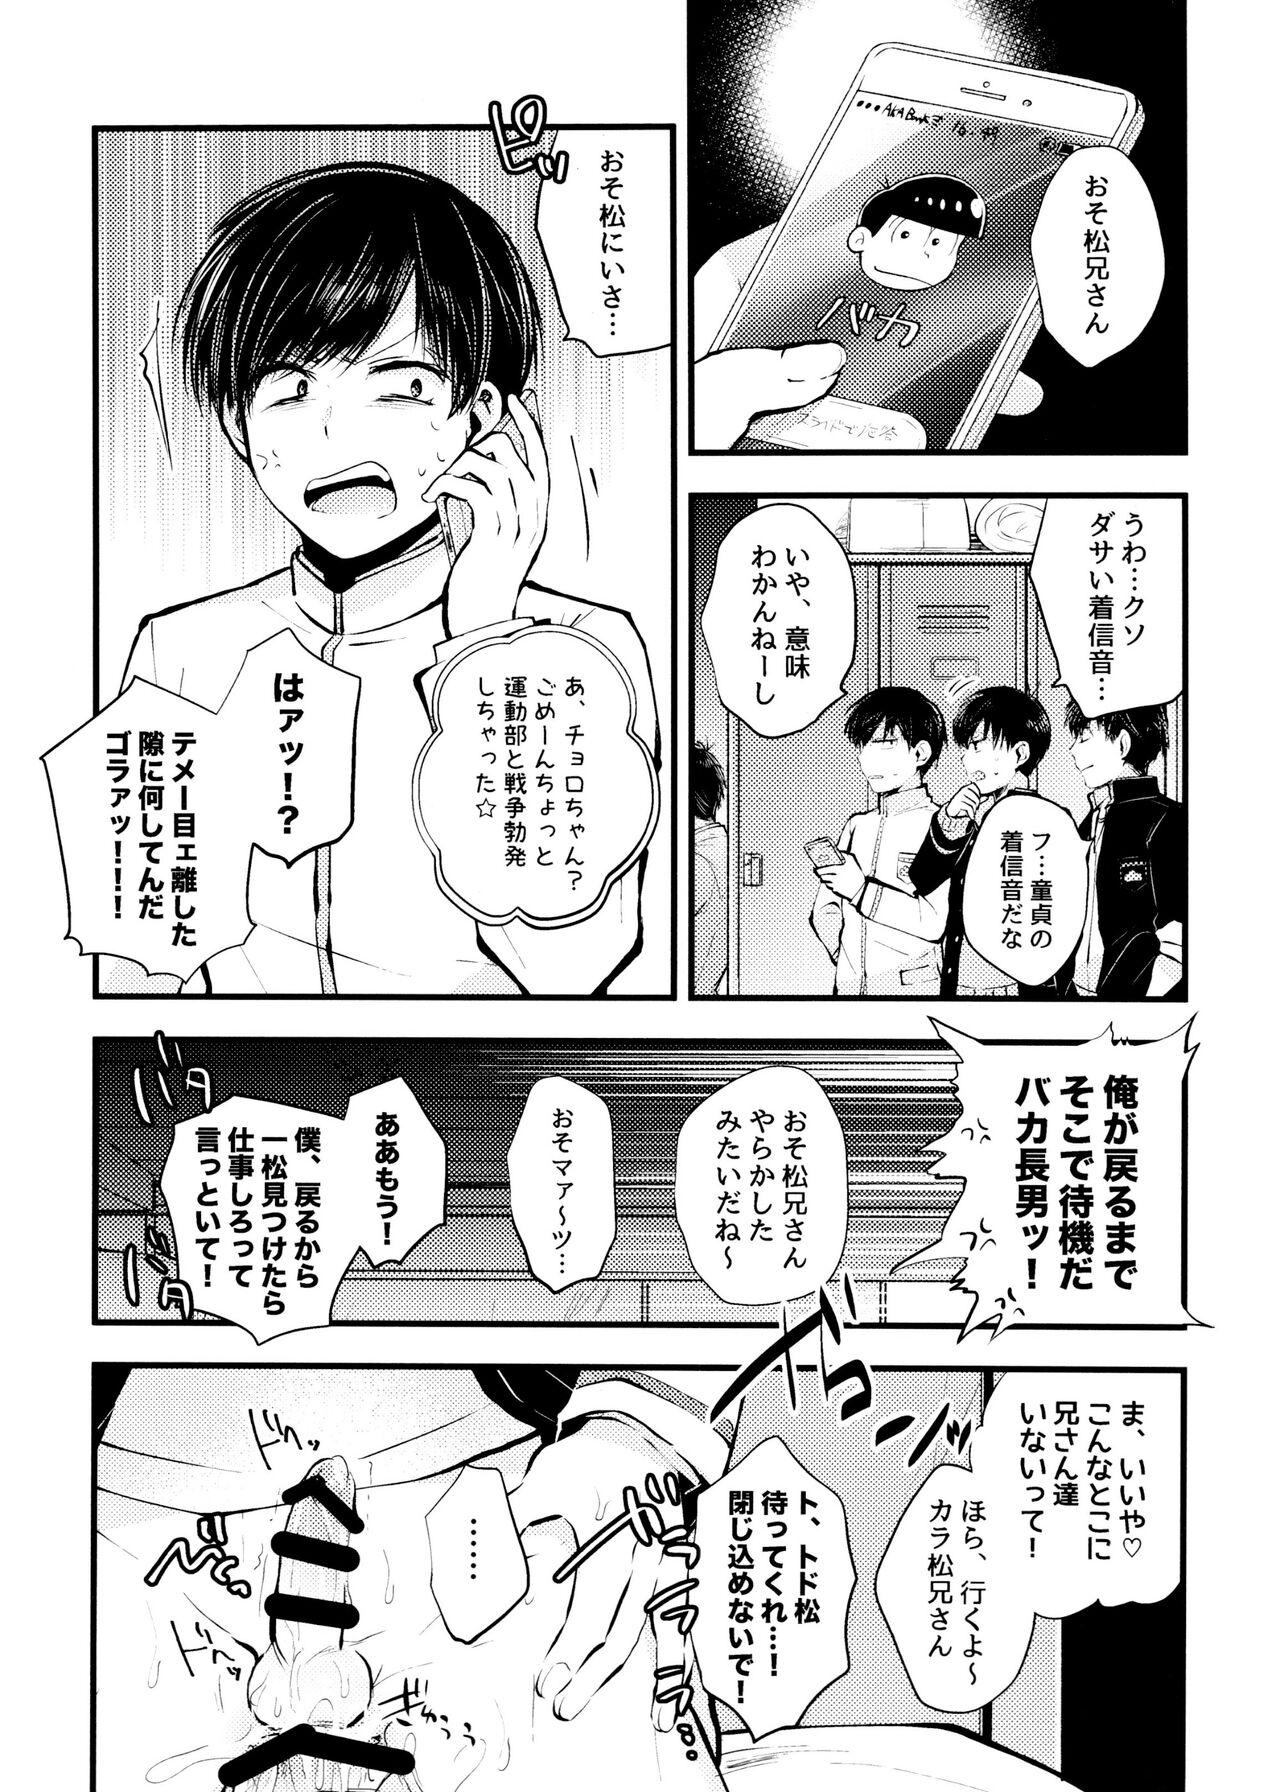 Cosplay aru sekai no hanashi - Osomatsu san Girlfriends - Page 11